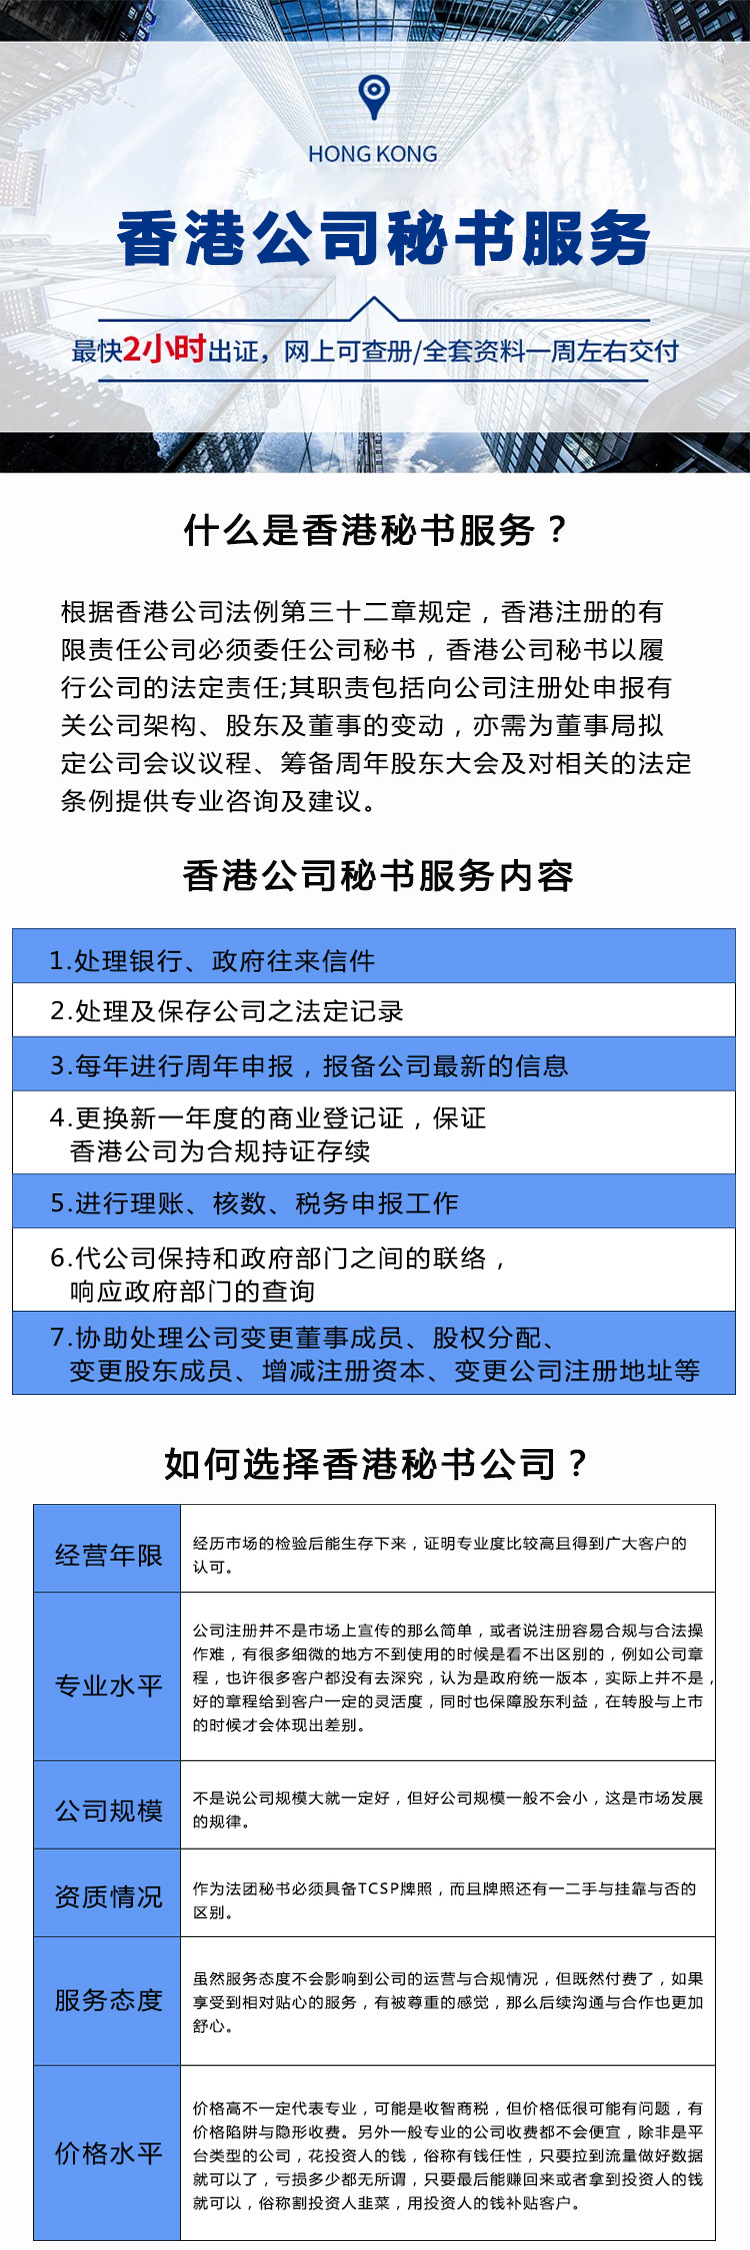 注册香港公司怎么查注册信息_注册香港账号_注册个体户,开通阿里巴巴,注册香港公司,收外汇